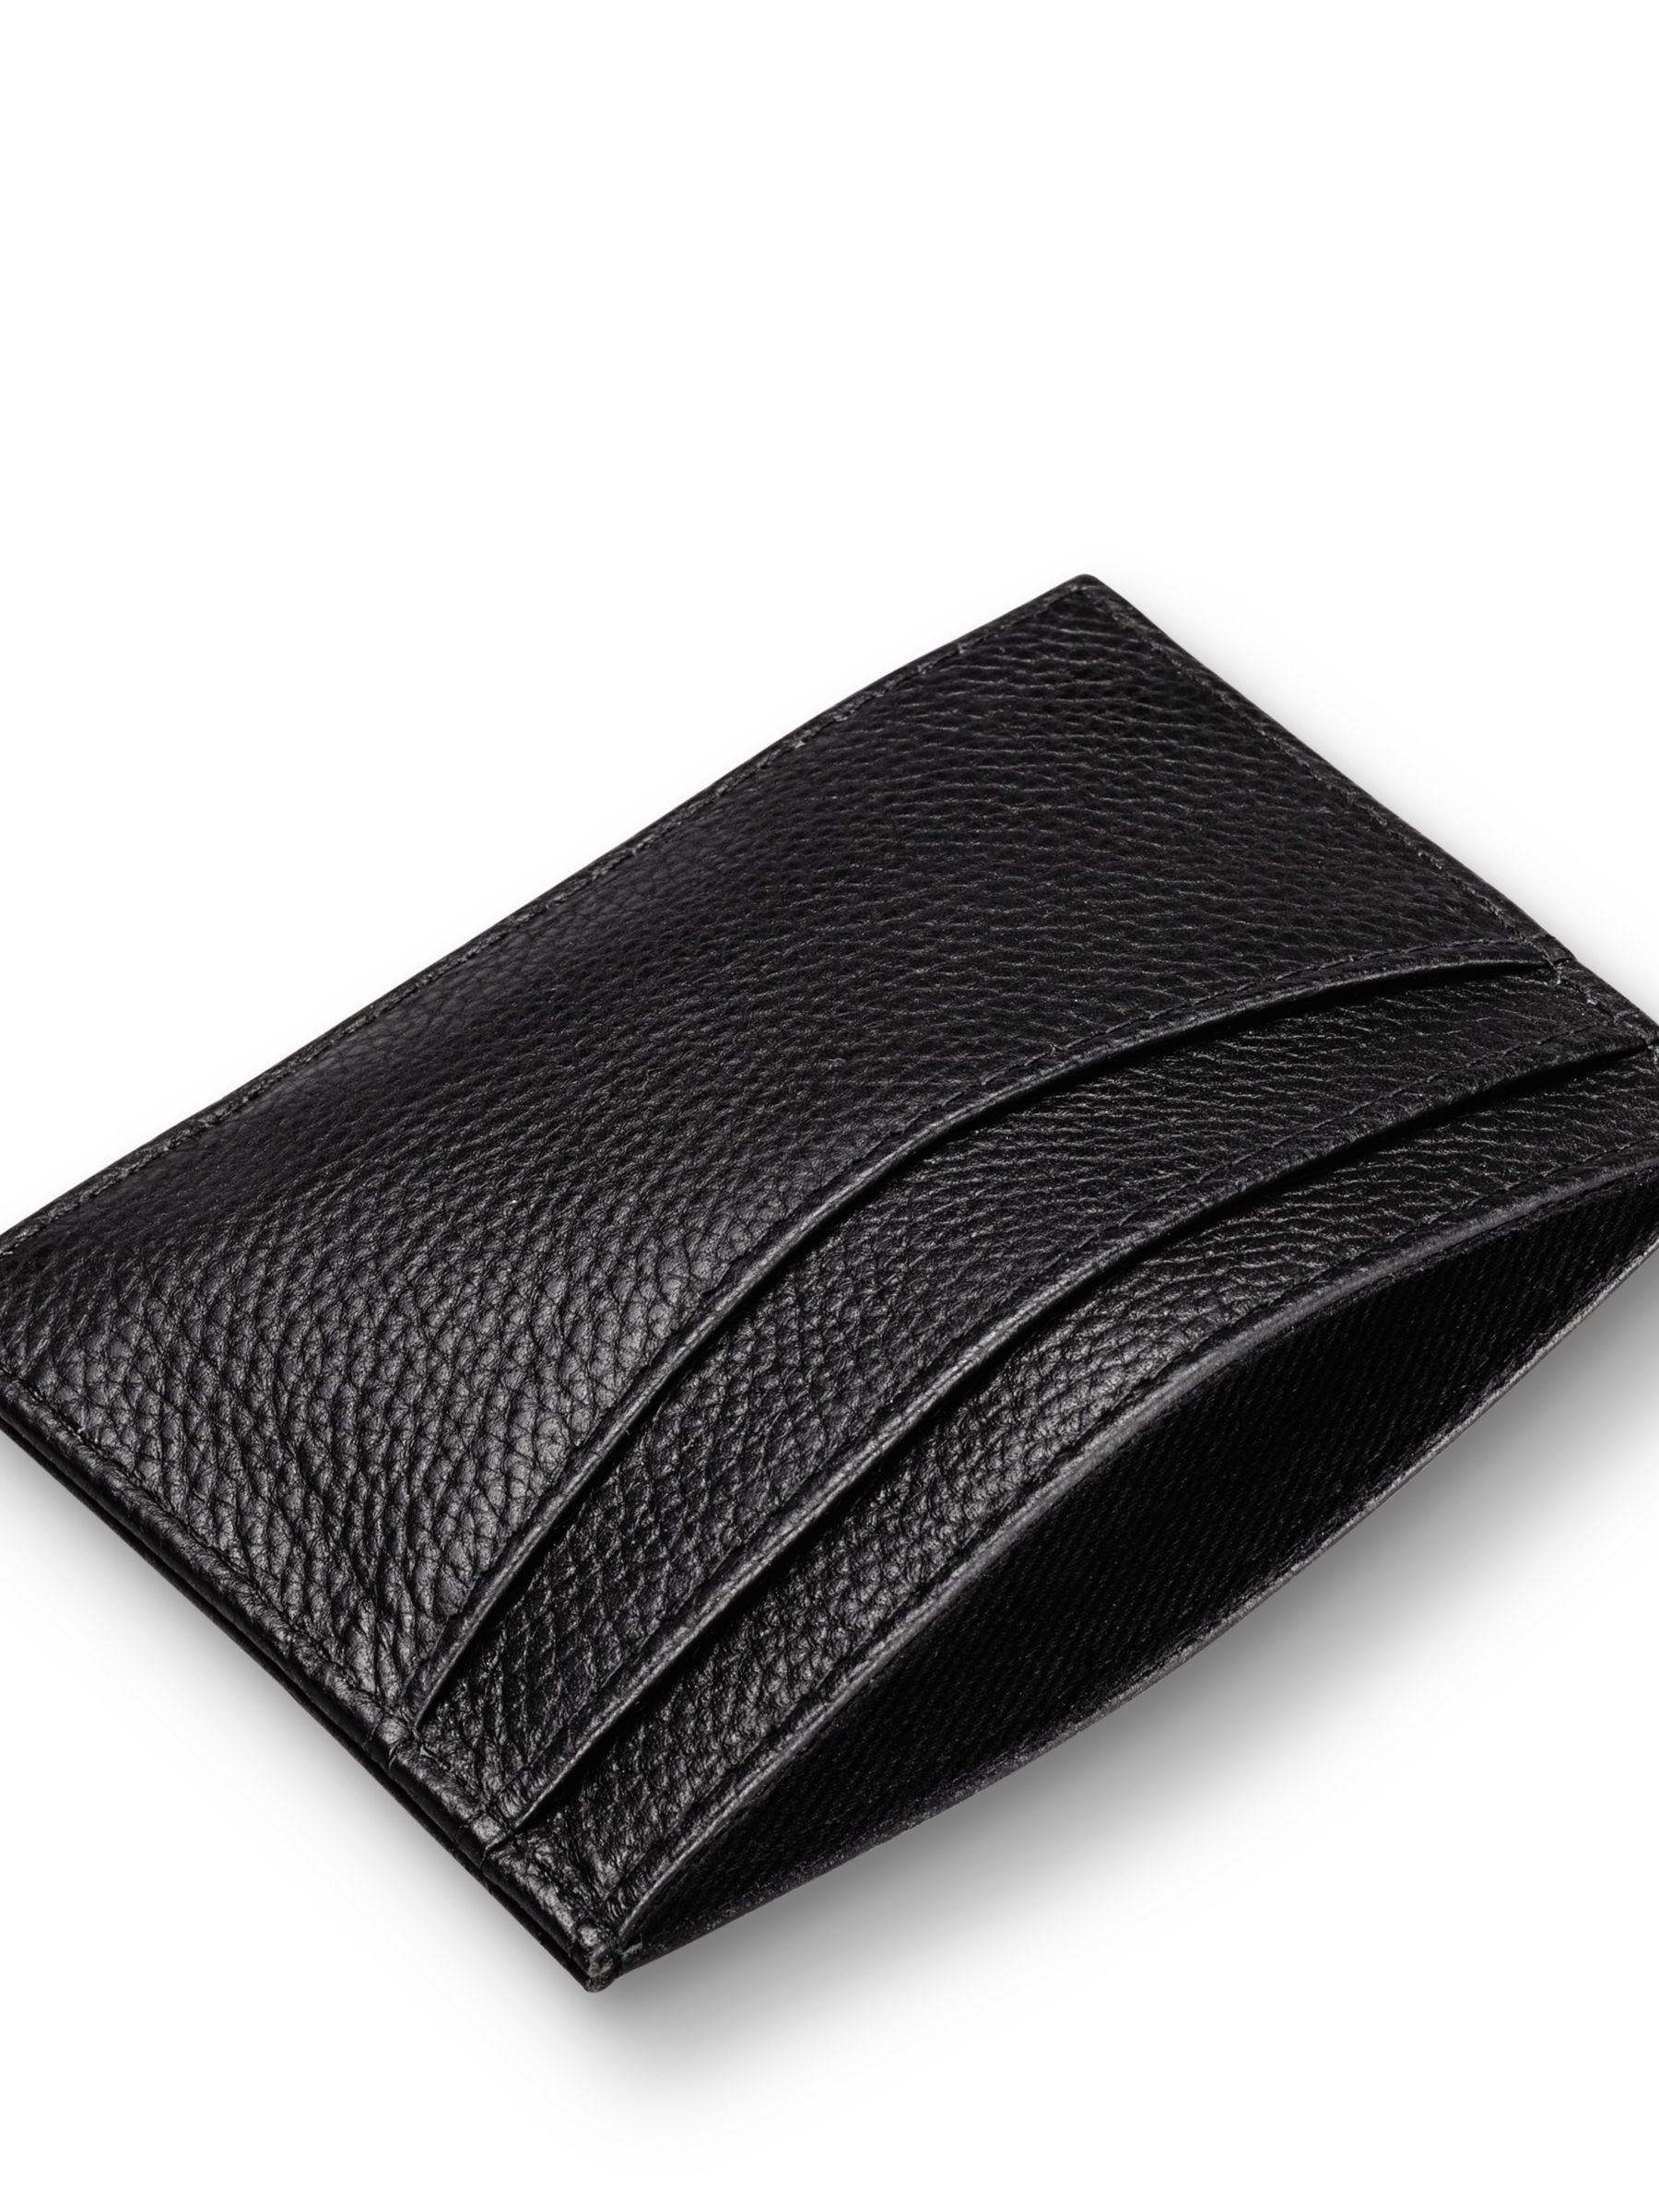 Charles Tyrwhitt Leather Cardholder, Black at John Lewis & Partners